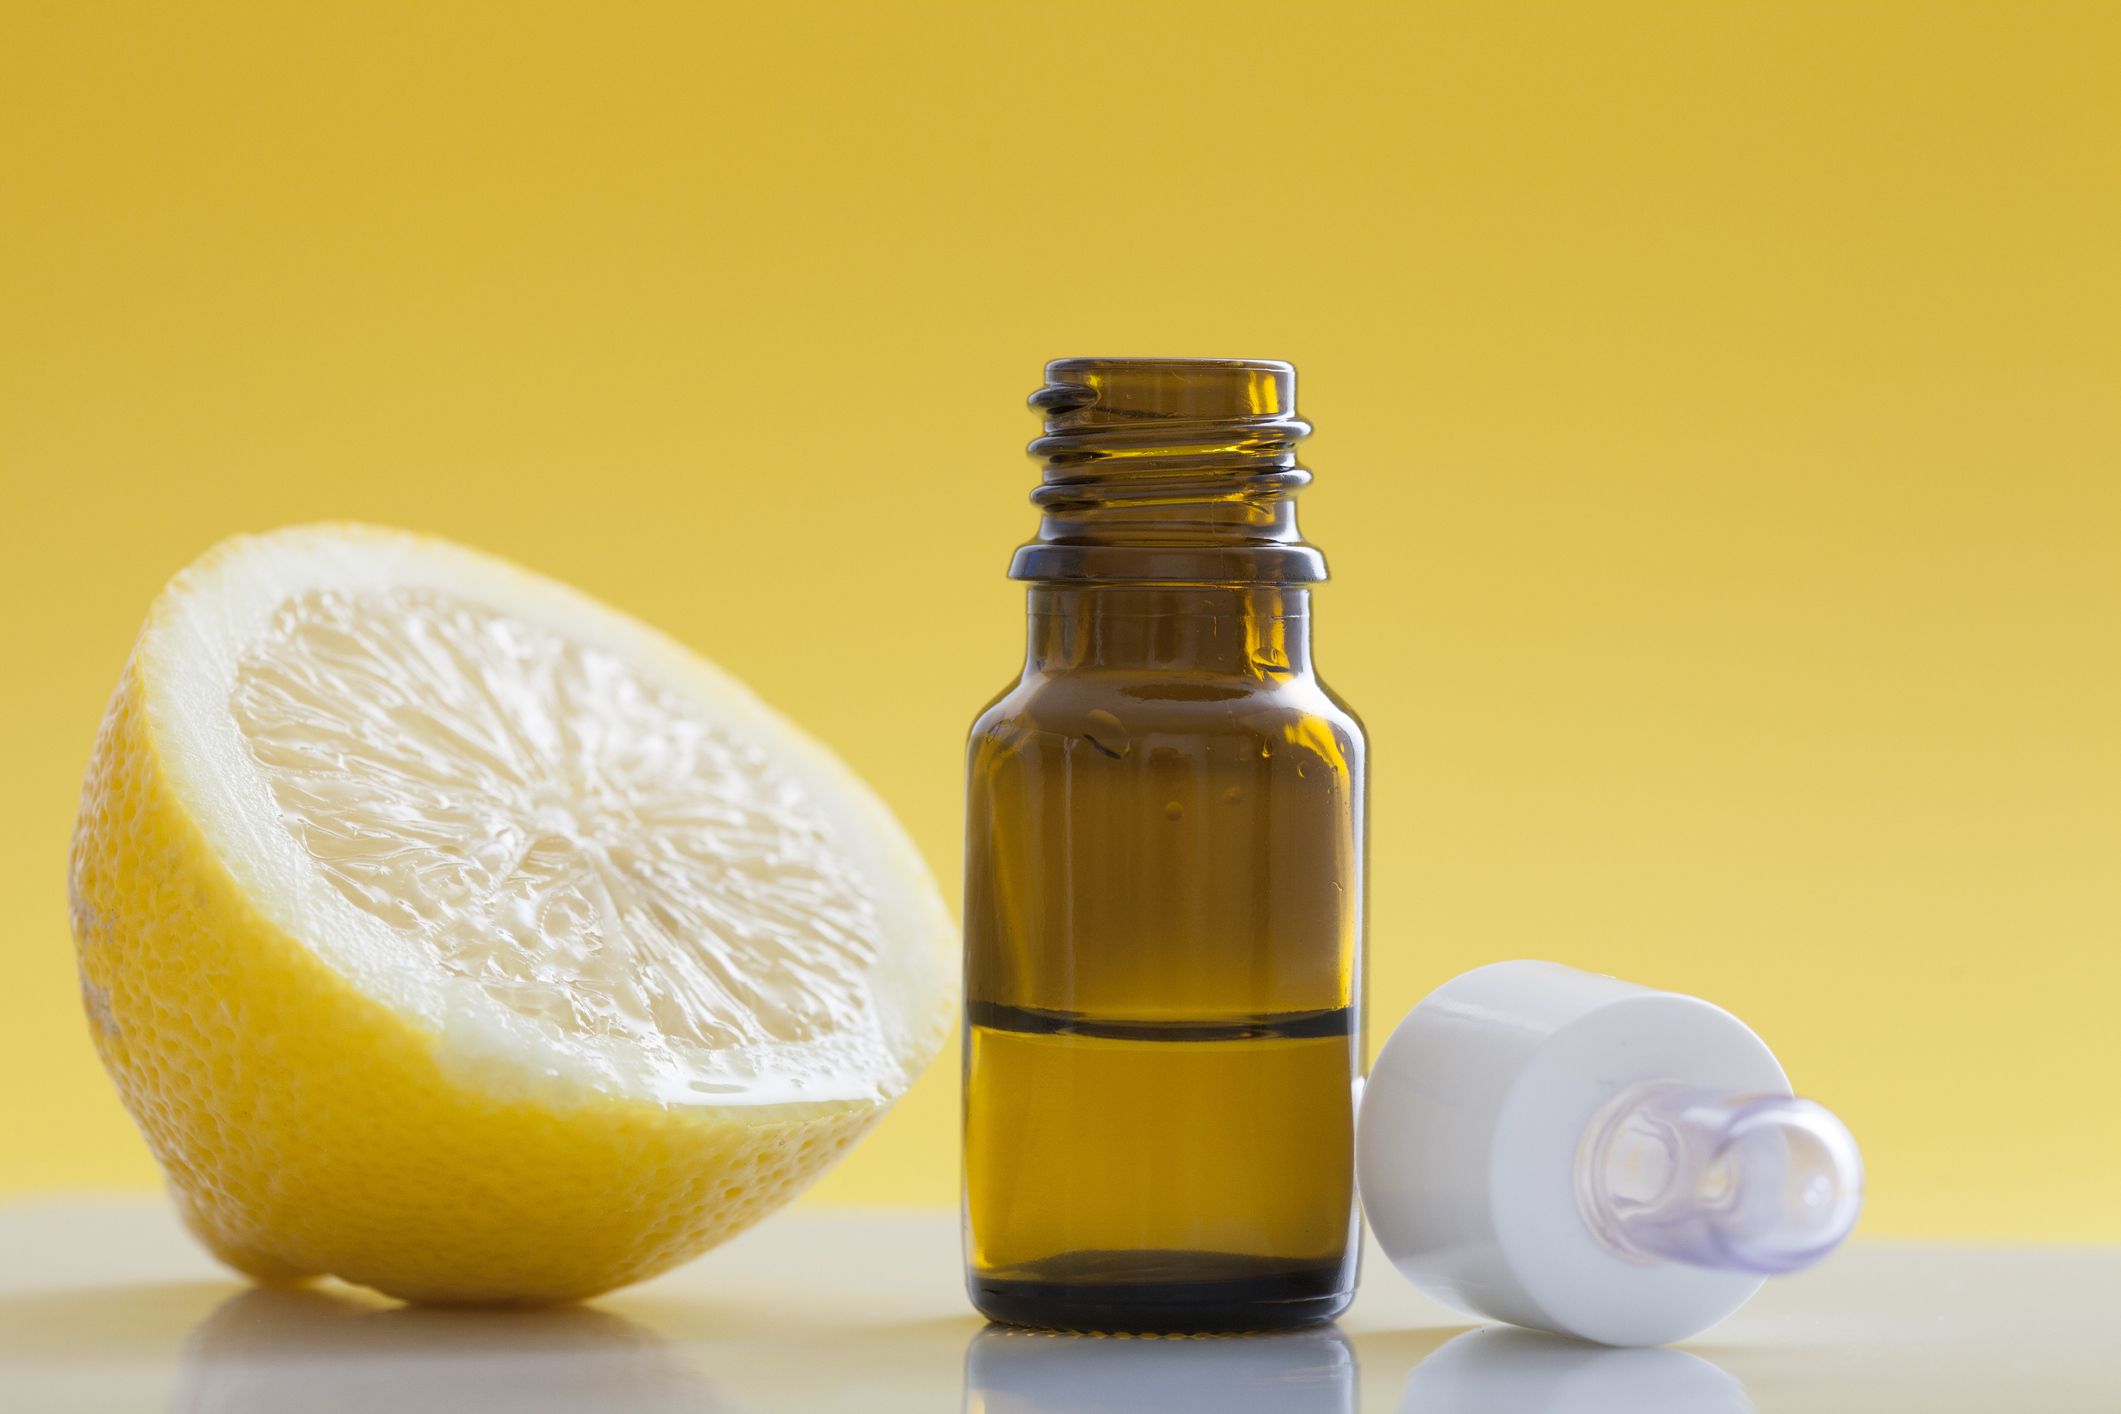 Как осветлить волосы лимоном (11 рецептов осветления)